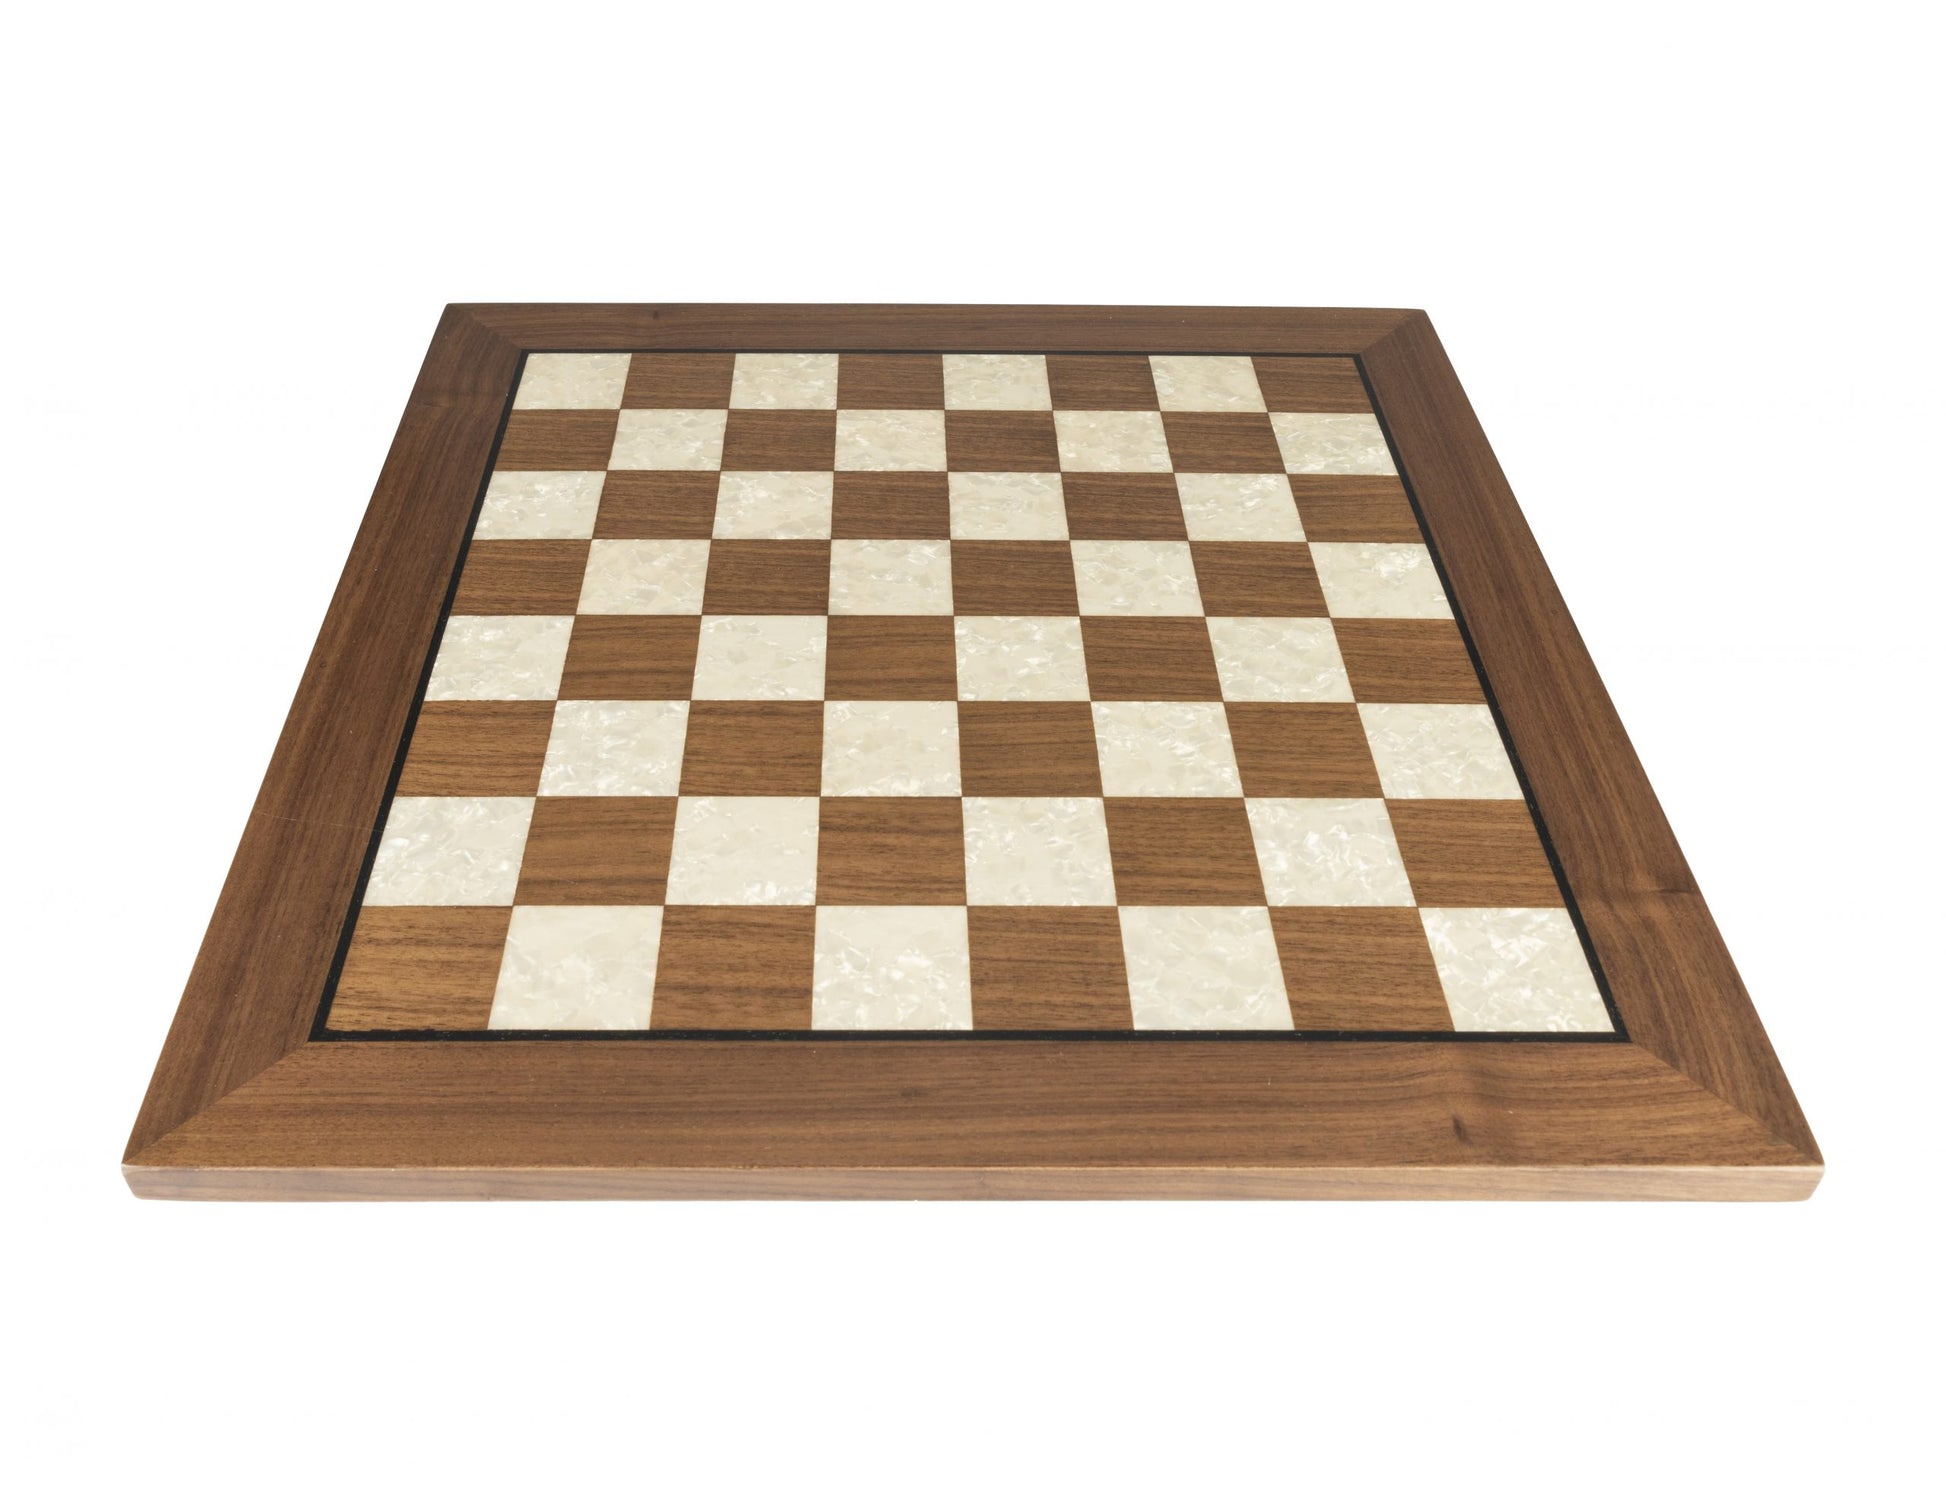 Art Chess Board